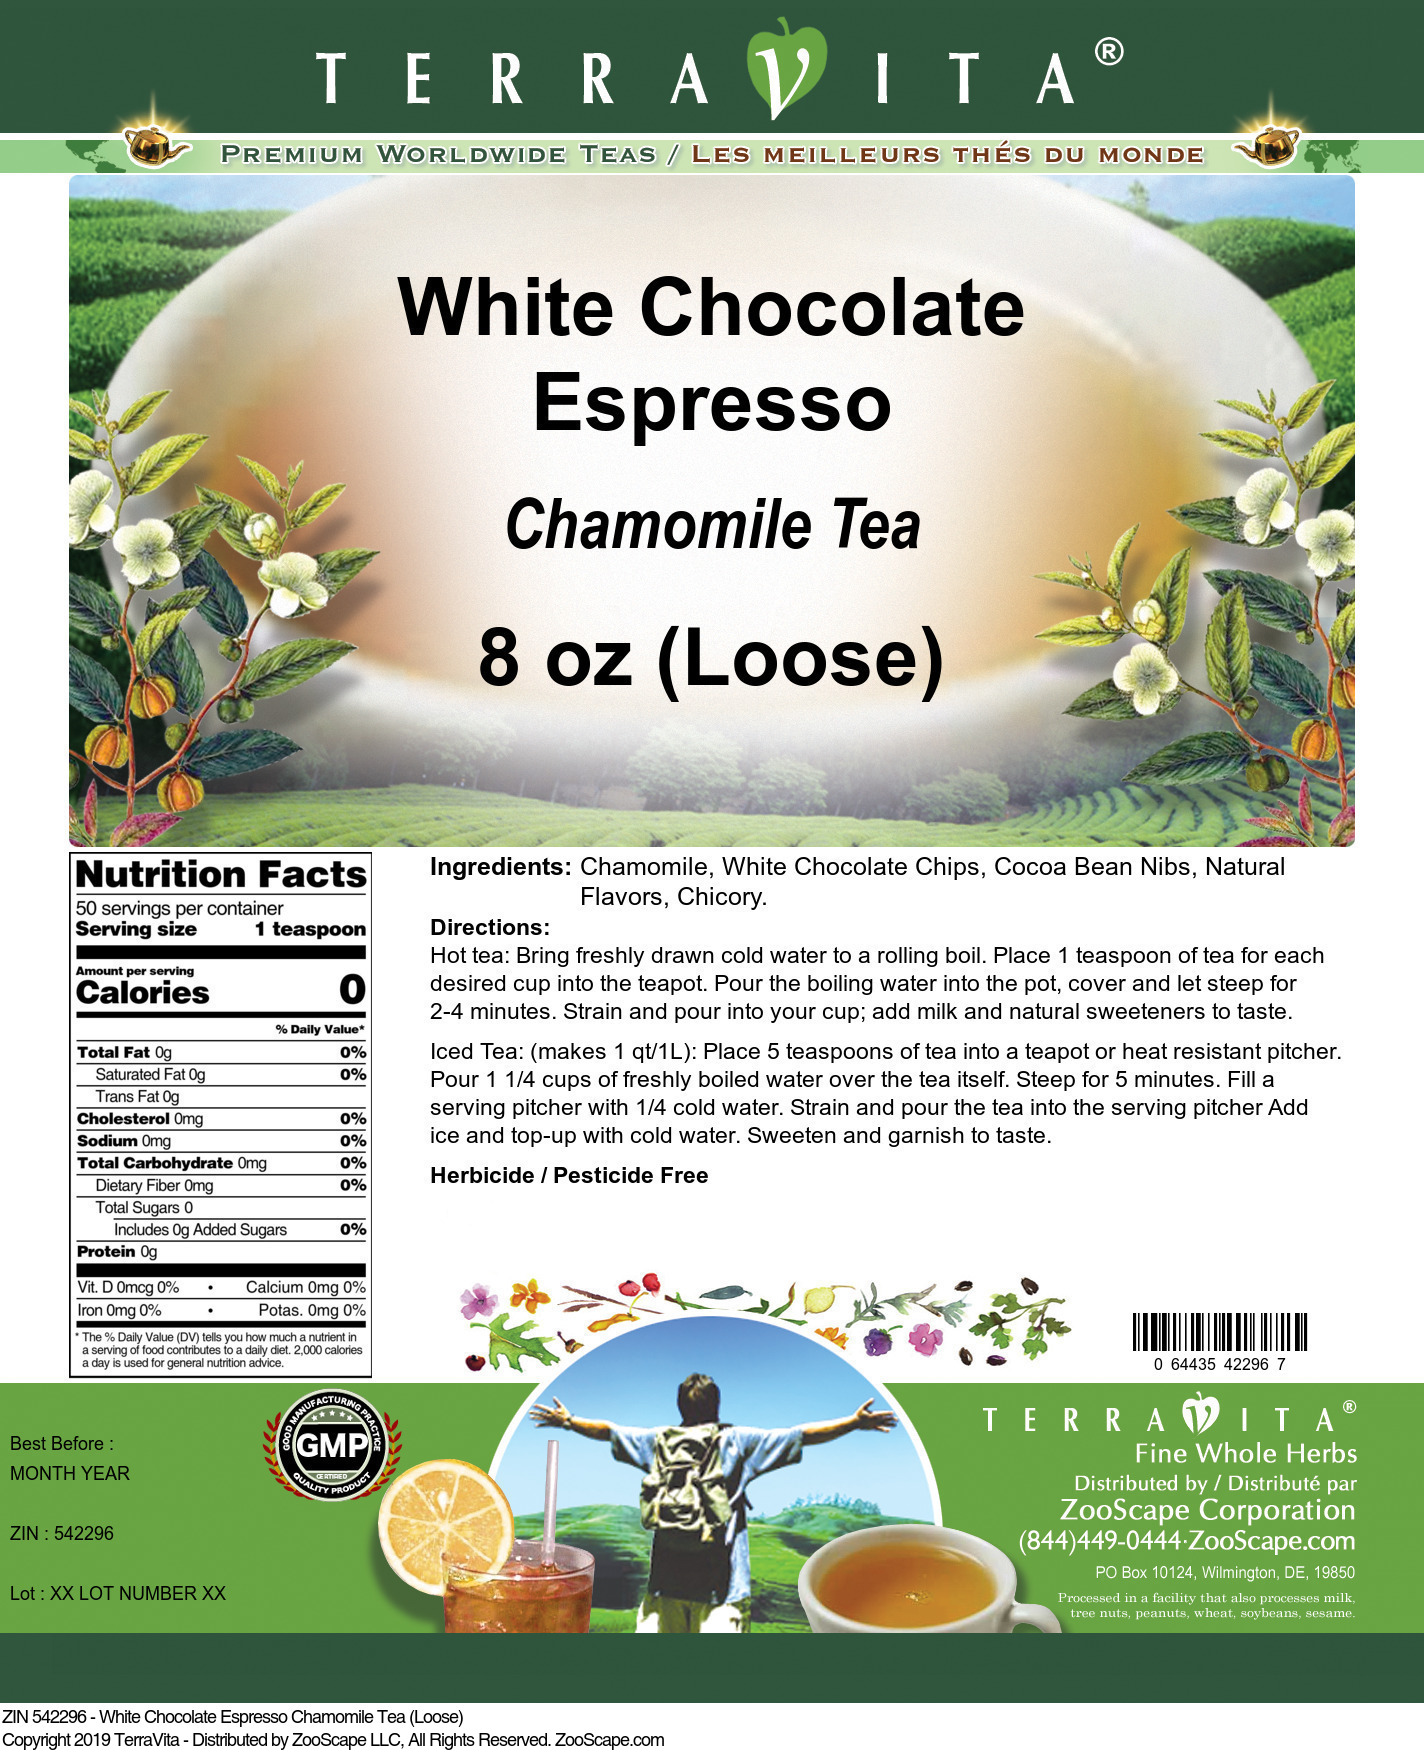 White Chocolate Espresso Chamomile Tea (Loose) - Label